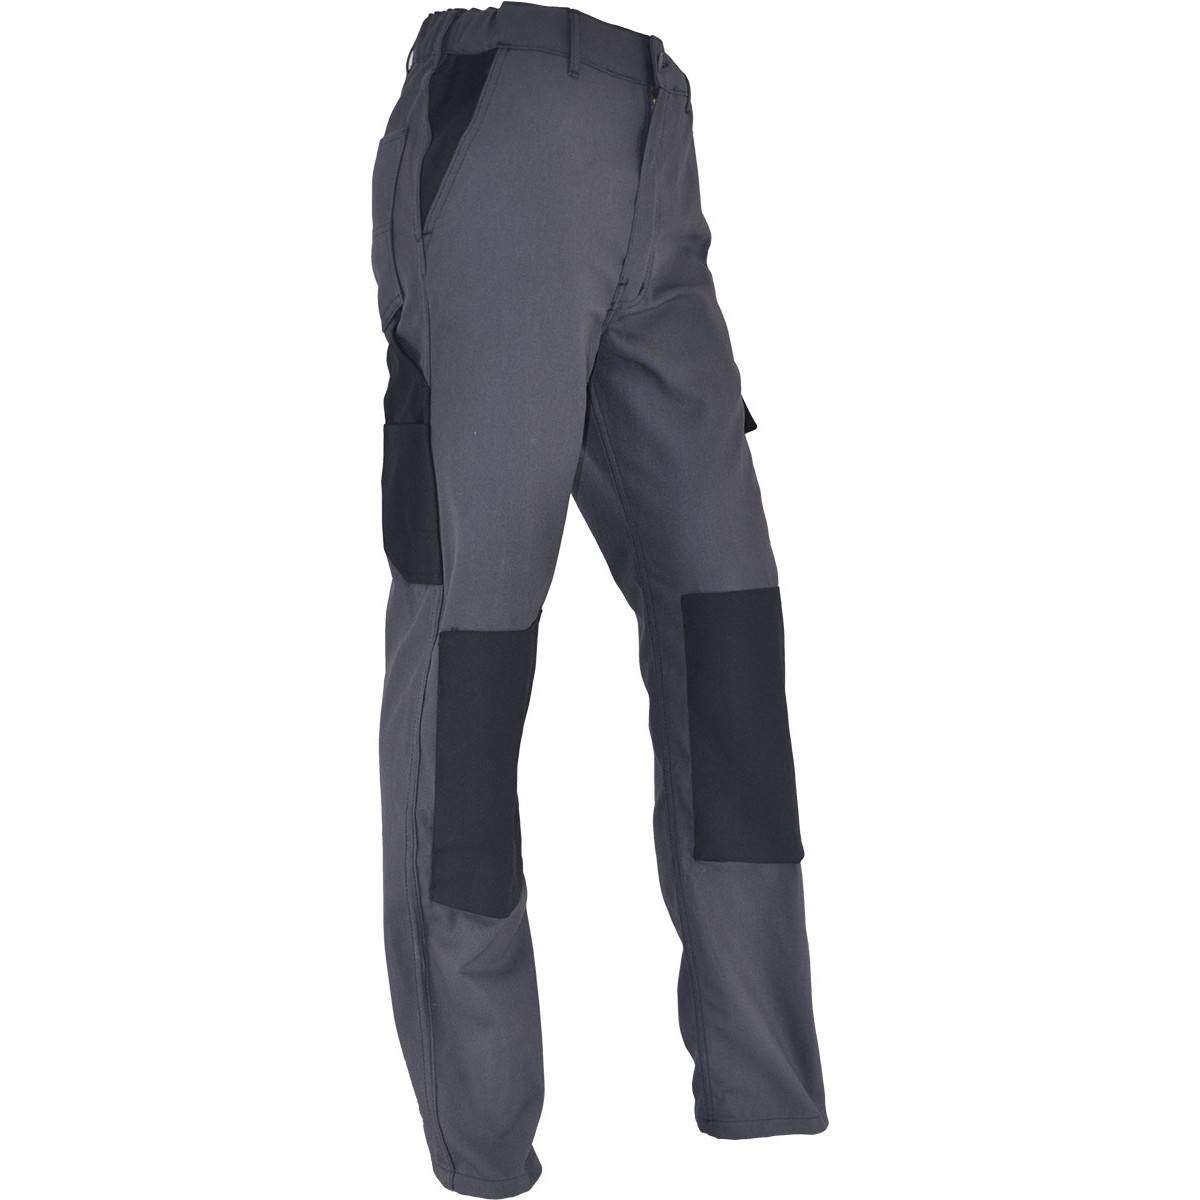 Pantalon de travail confort taille 42, gris Anthracite, poches multiples, genouillères chantiers incluses